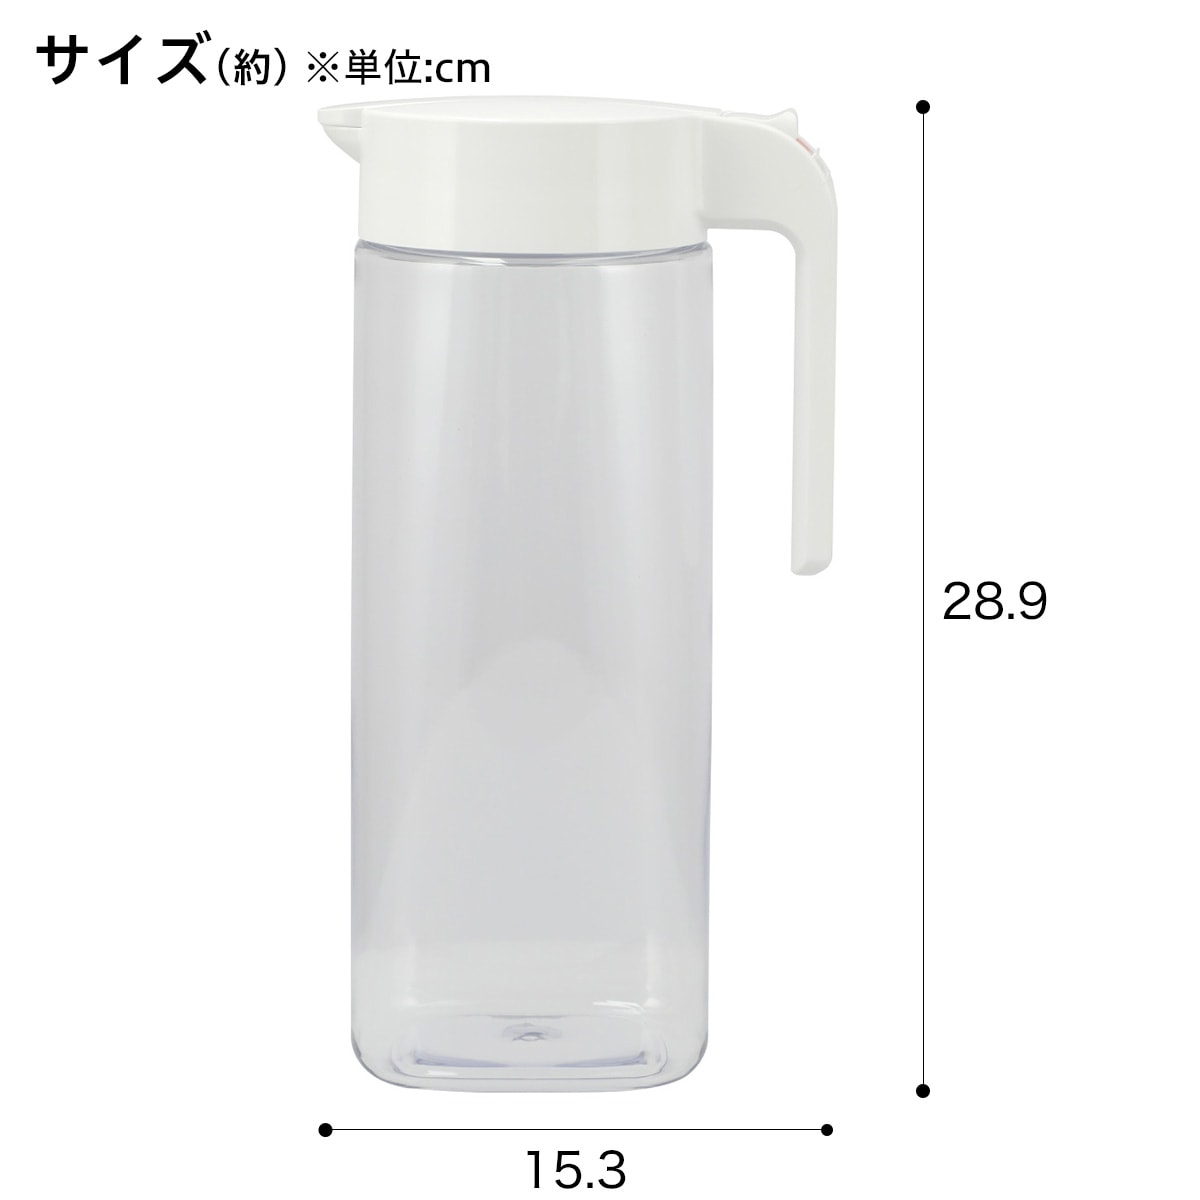 ワンプッシュ簡単操作・横置きもできる冷水筒(2.1L)   【1年保証】